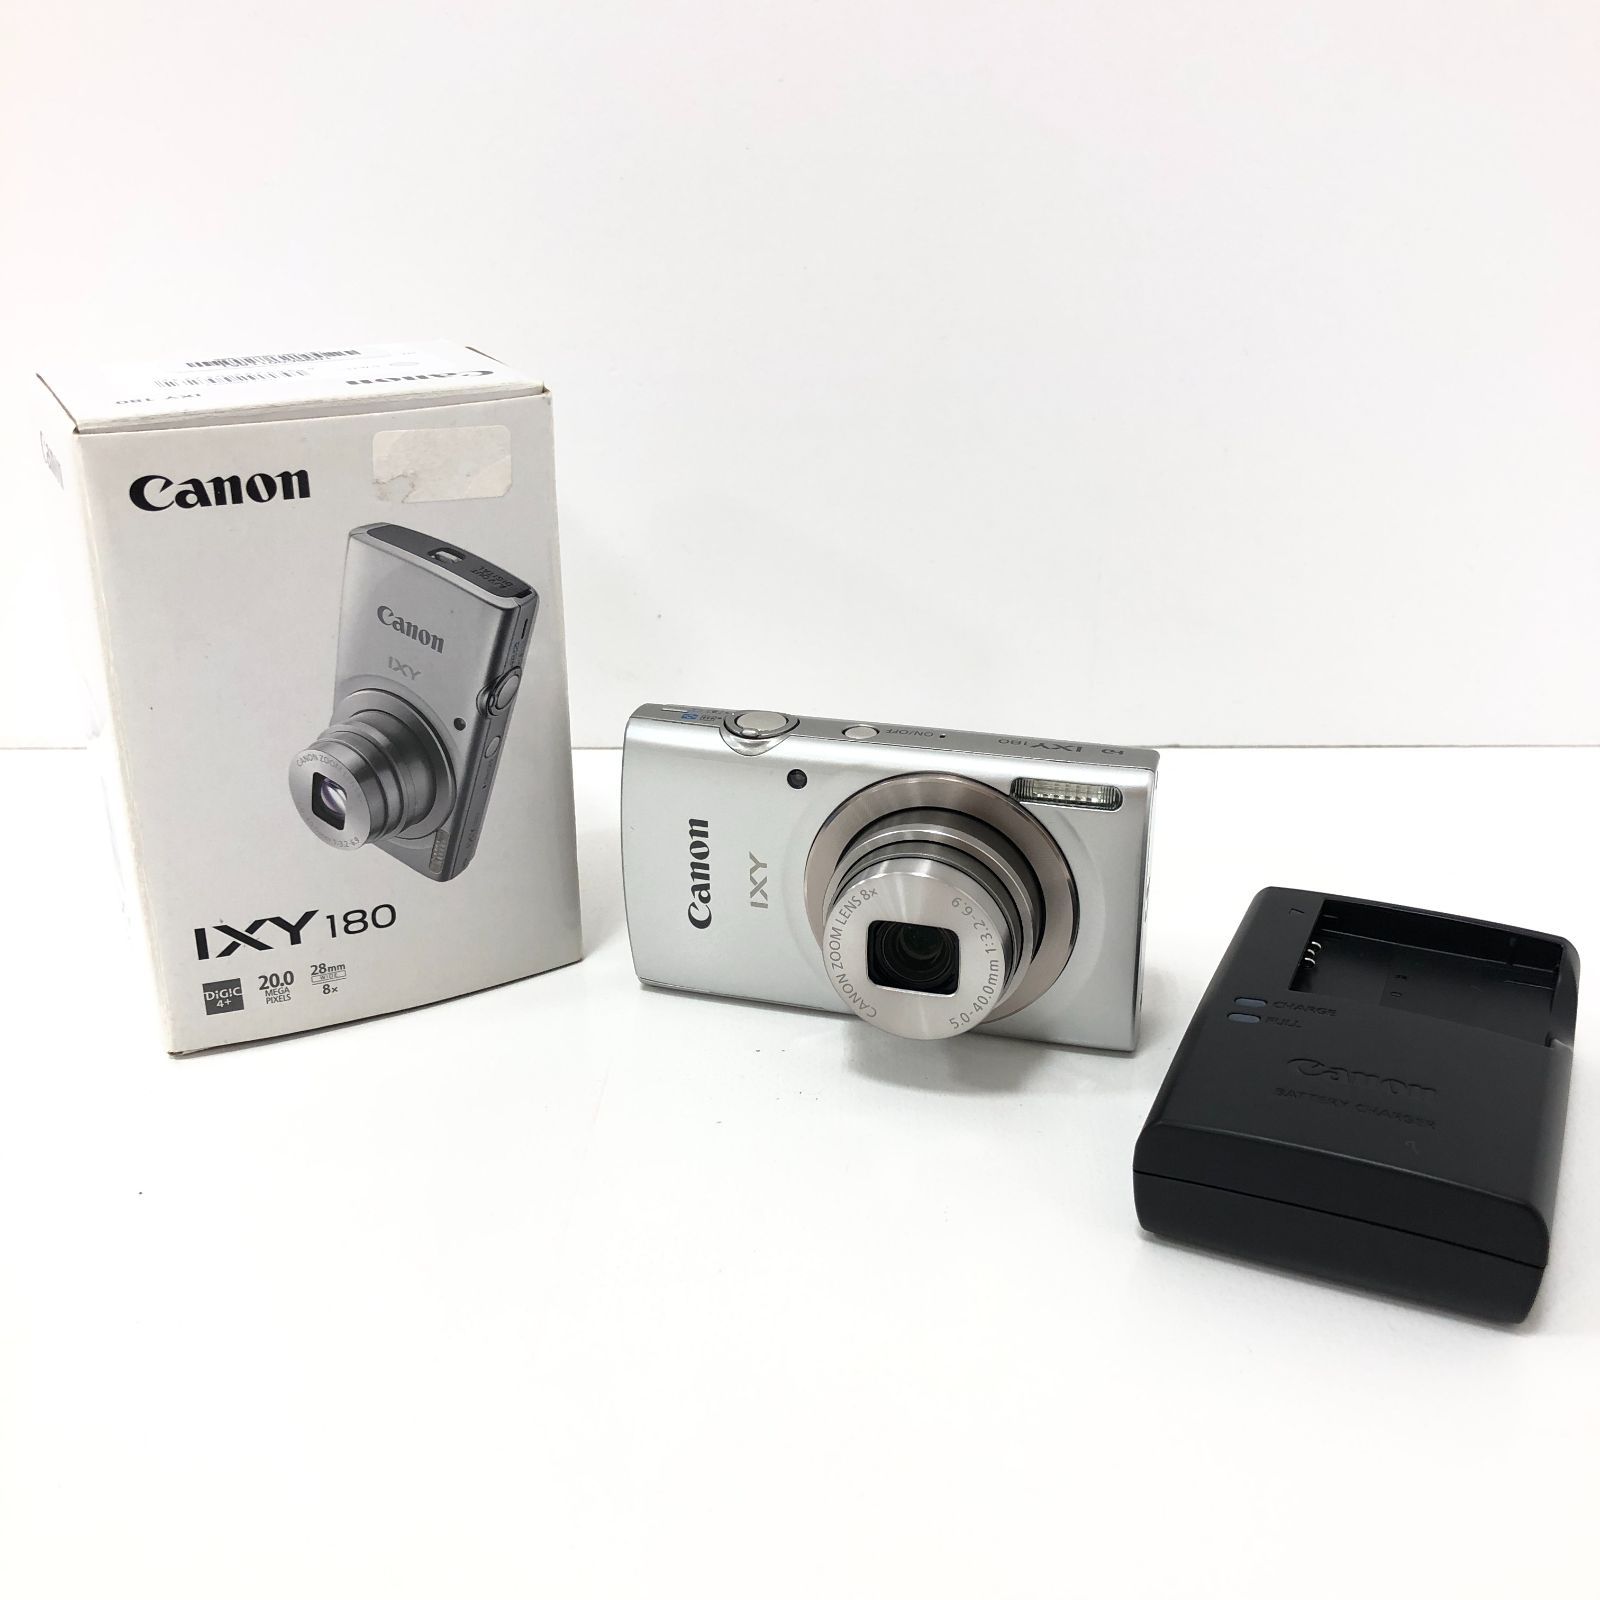 07m0815【動作確認済み】Canon キャノン IXY 180 デジタルカメラ 